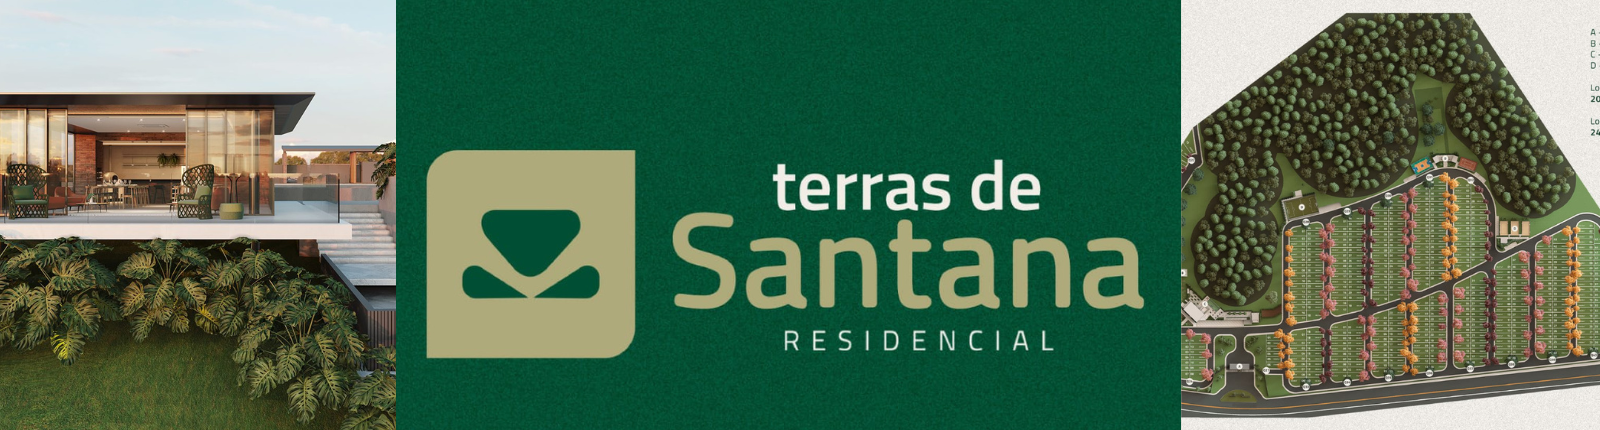 Lançamento Residencial Terras De Santana | MAURO IMÓVEIS